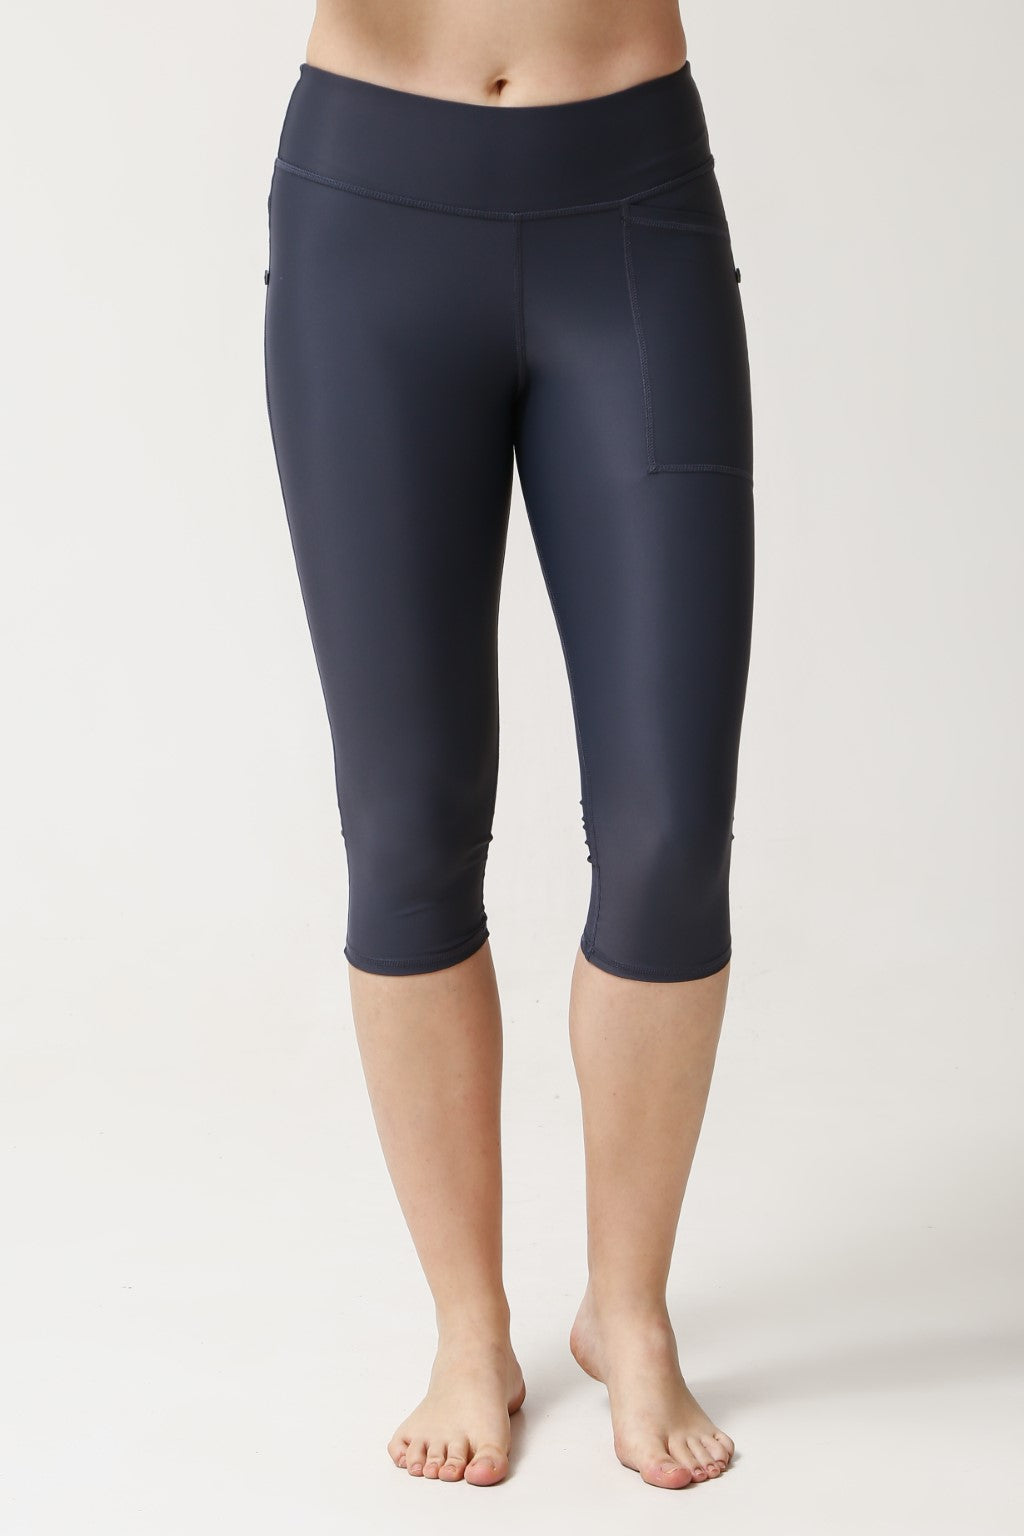 Lululemon Black 20.5” Capri Leggings / Yoga Pants Size 4